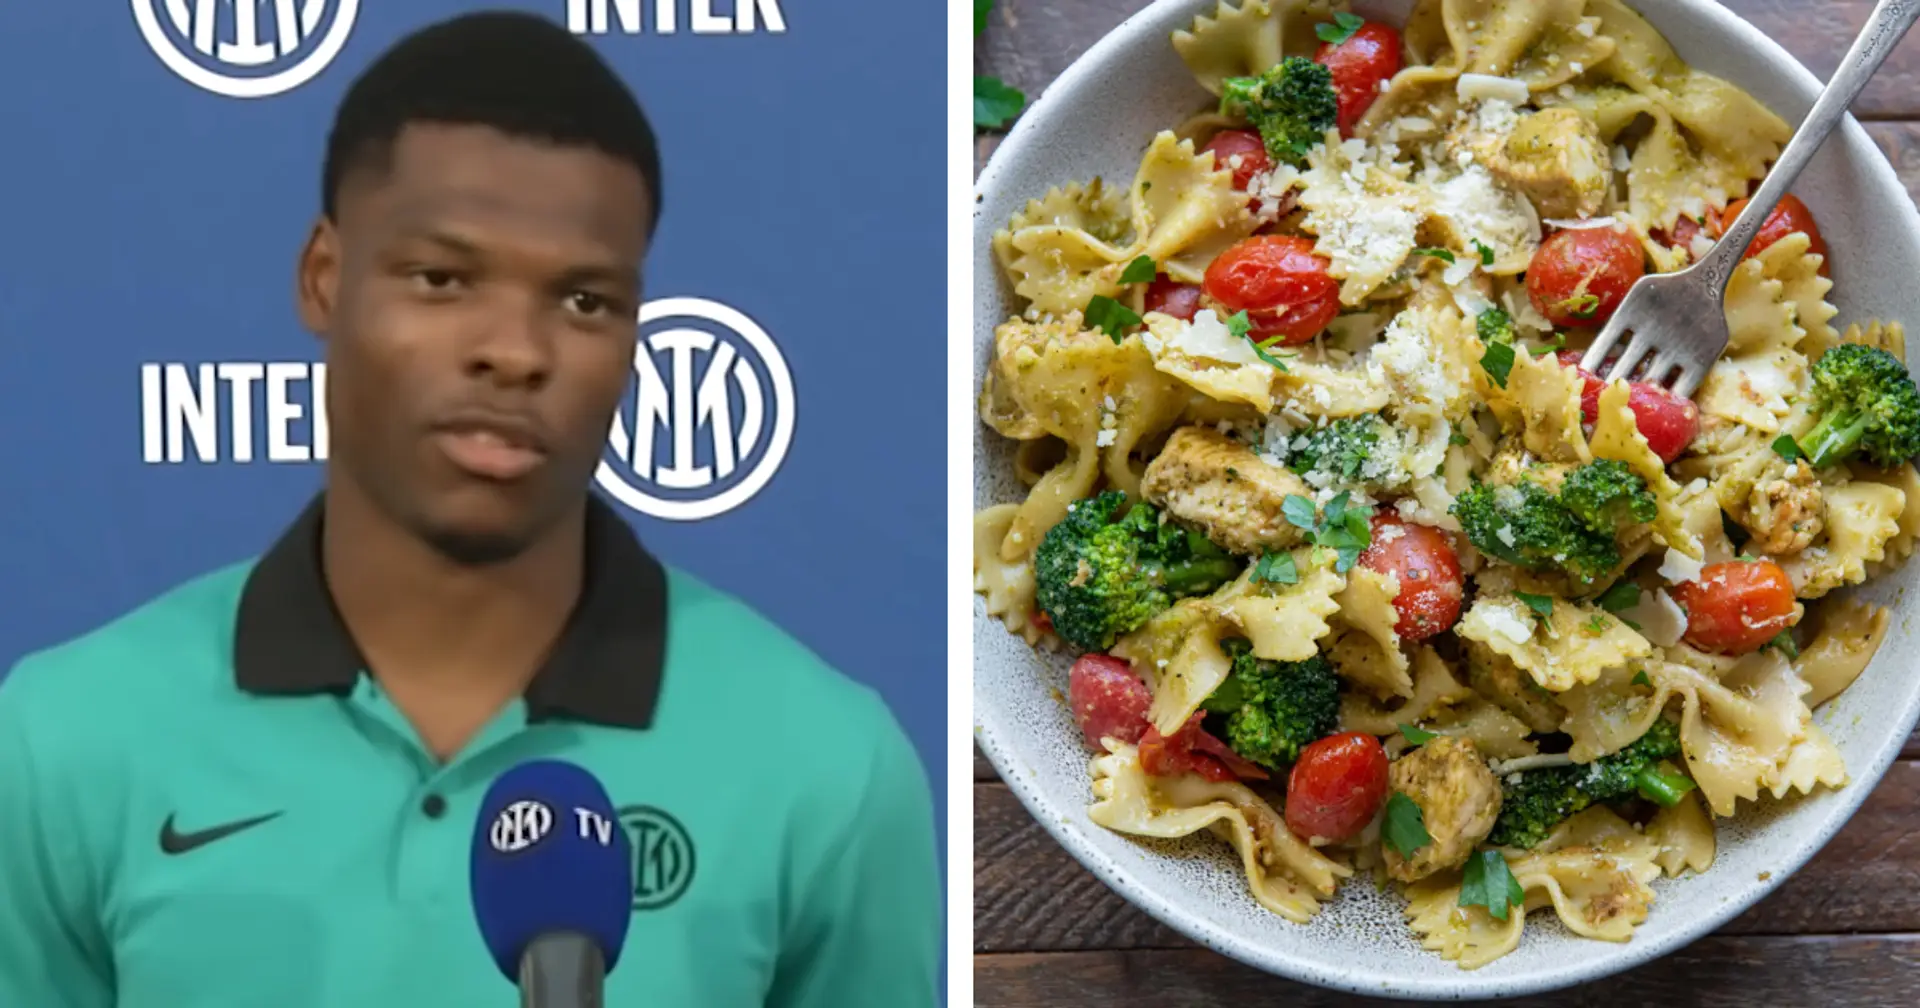 Dumfries enthüllt die Wut seiner Teamkollegen von Inter Mailand, weil er Hühnchen über Pesto-Nudeln gibt